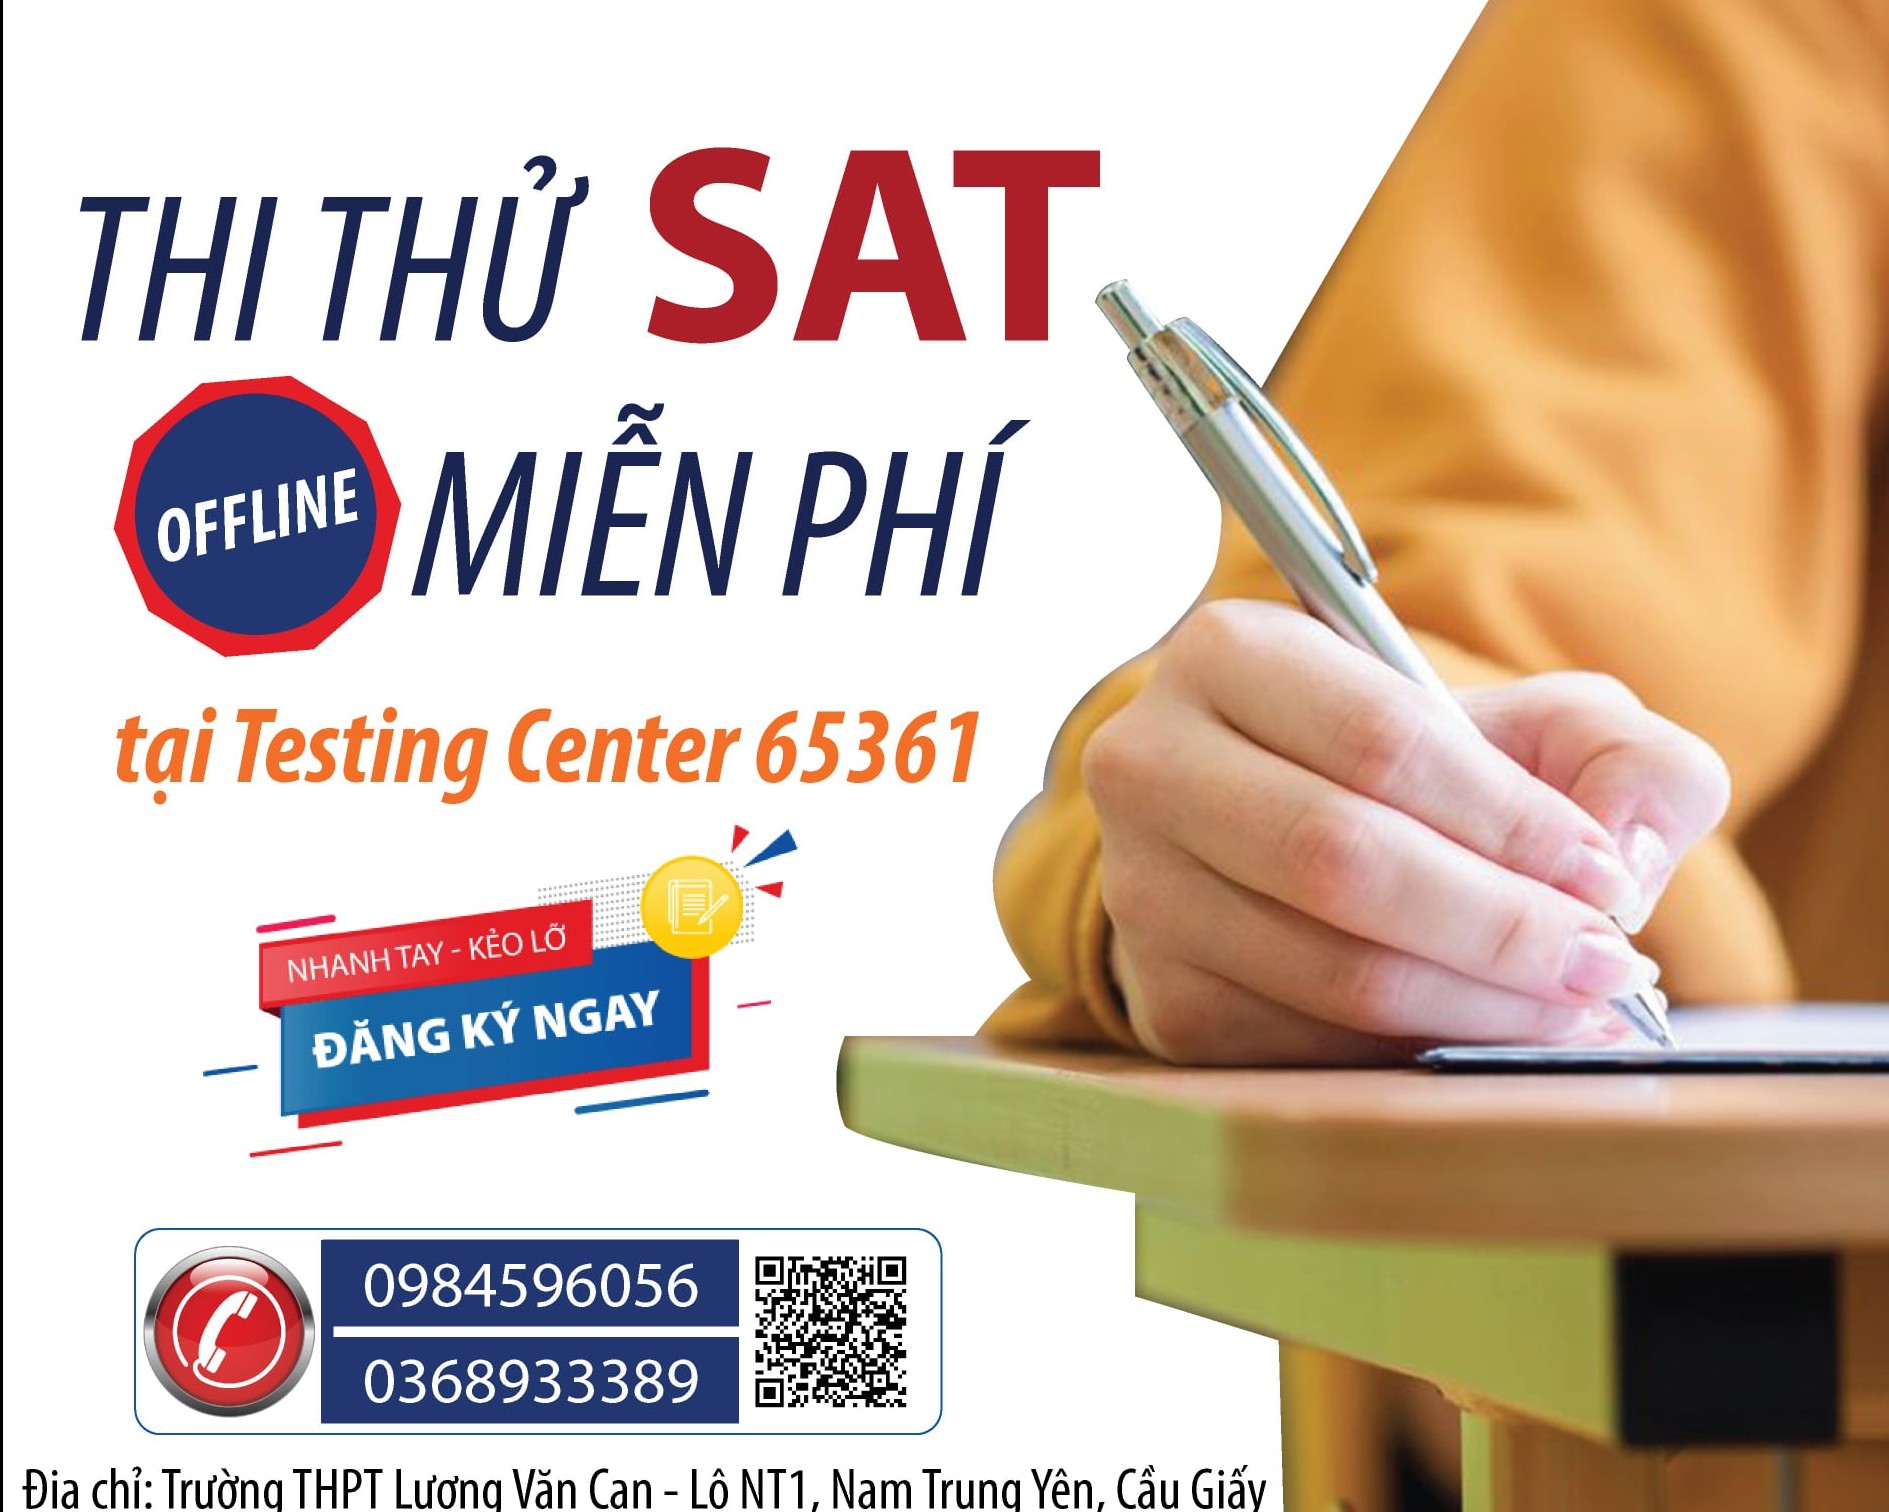 THI THỬ SAT MIỄN PHÍ TẠI TESTING CENTER (65361)